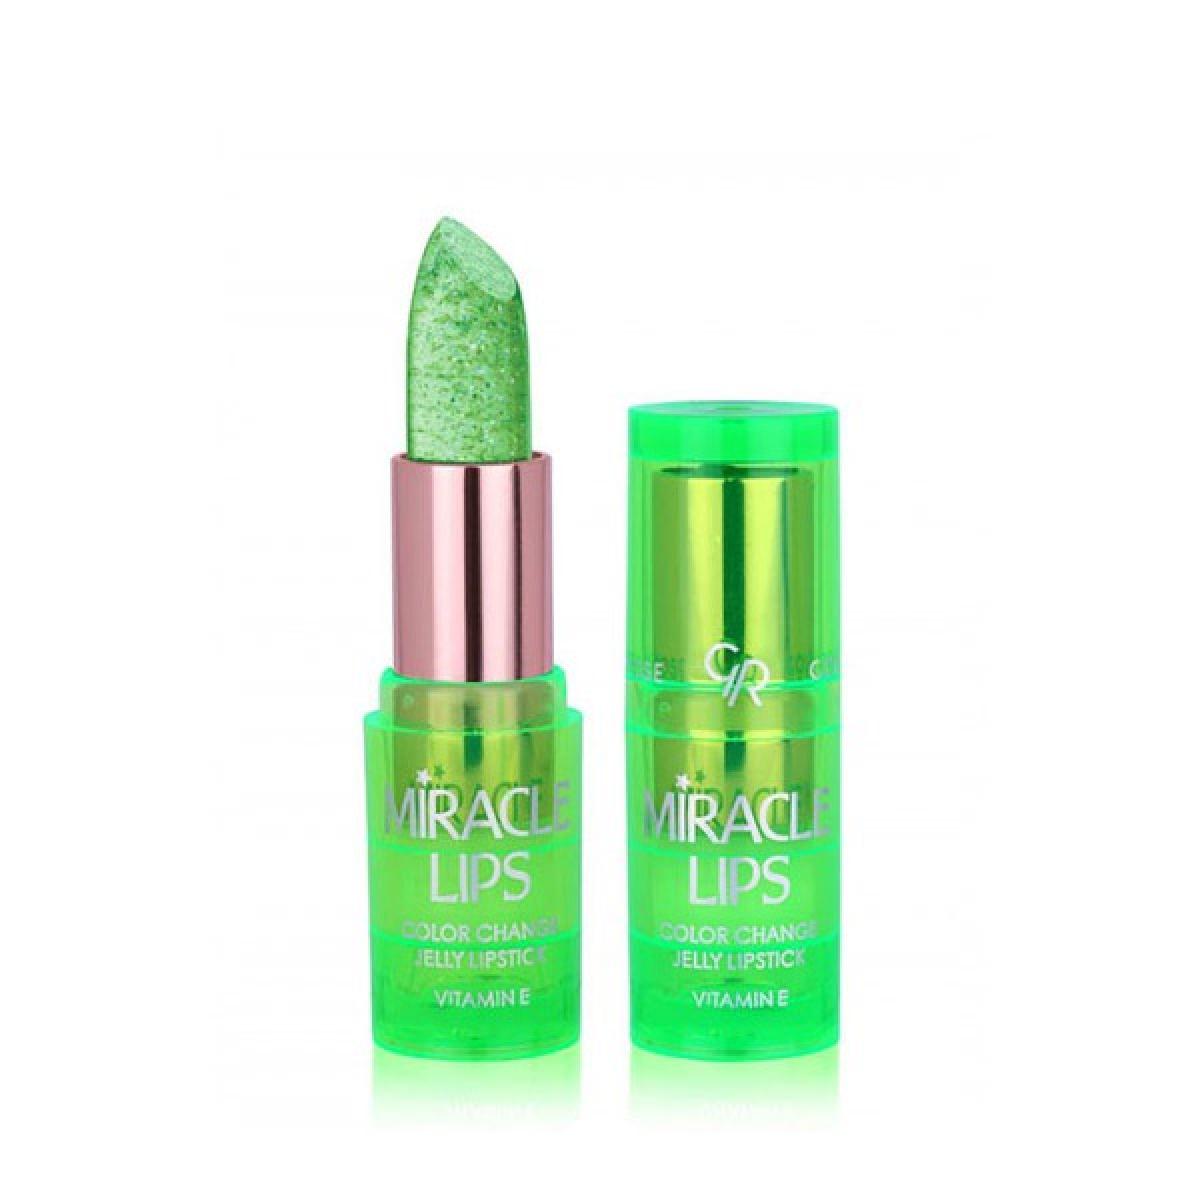 رژ لب حرارتی میراکل لیپس - Miracle Lips Jelly lipstick